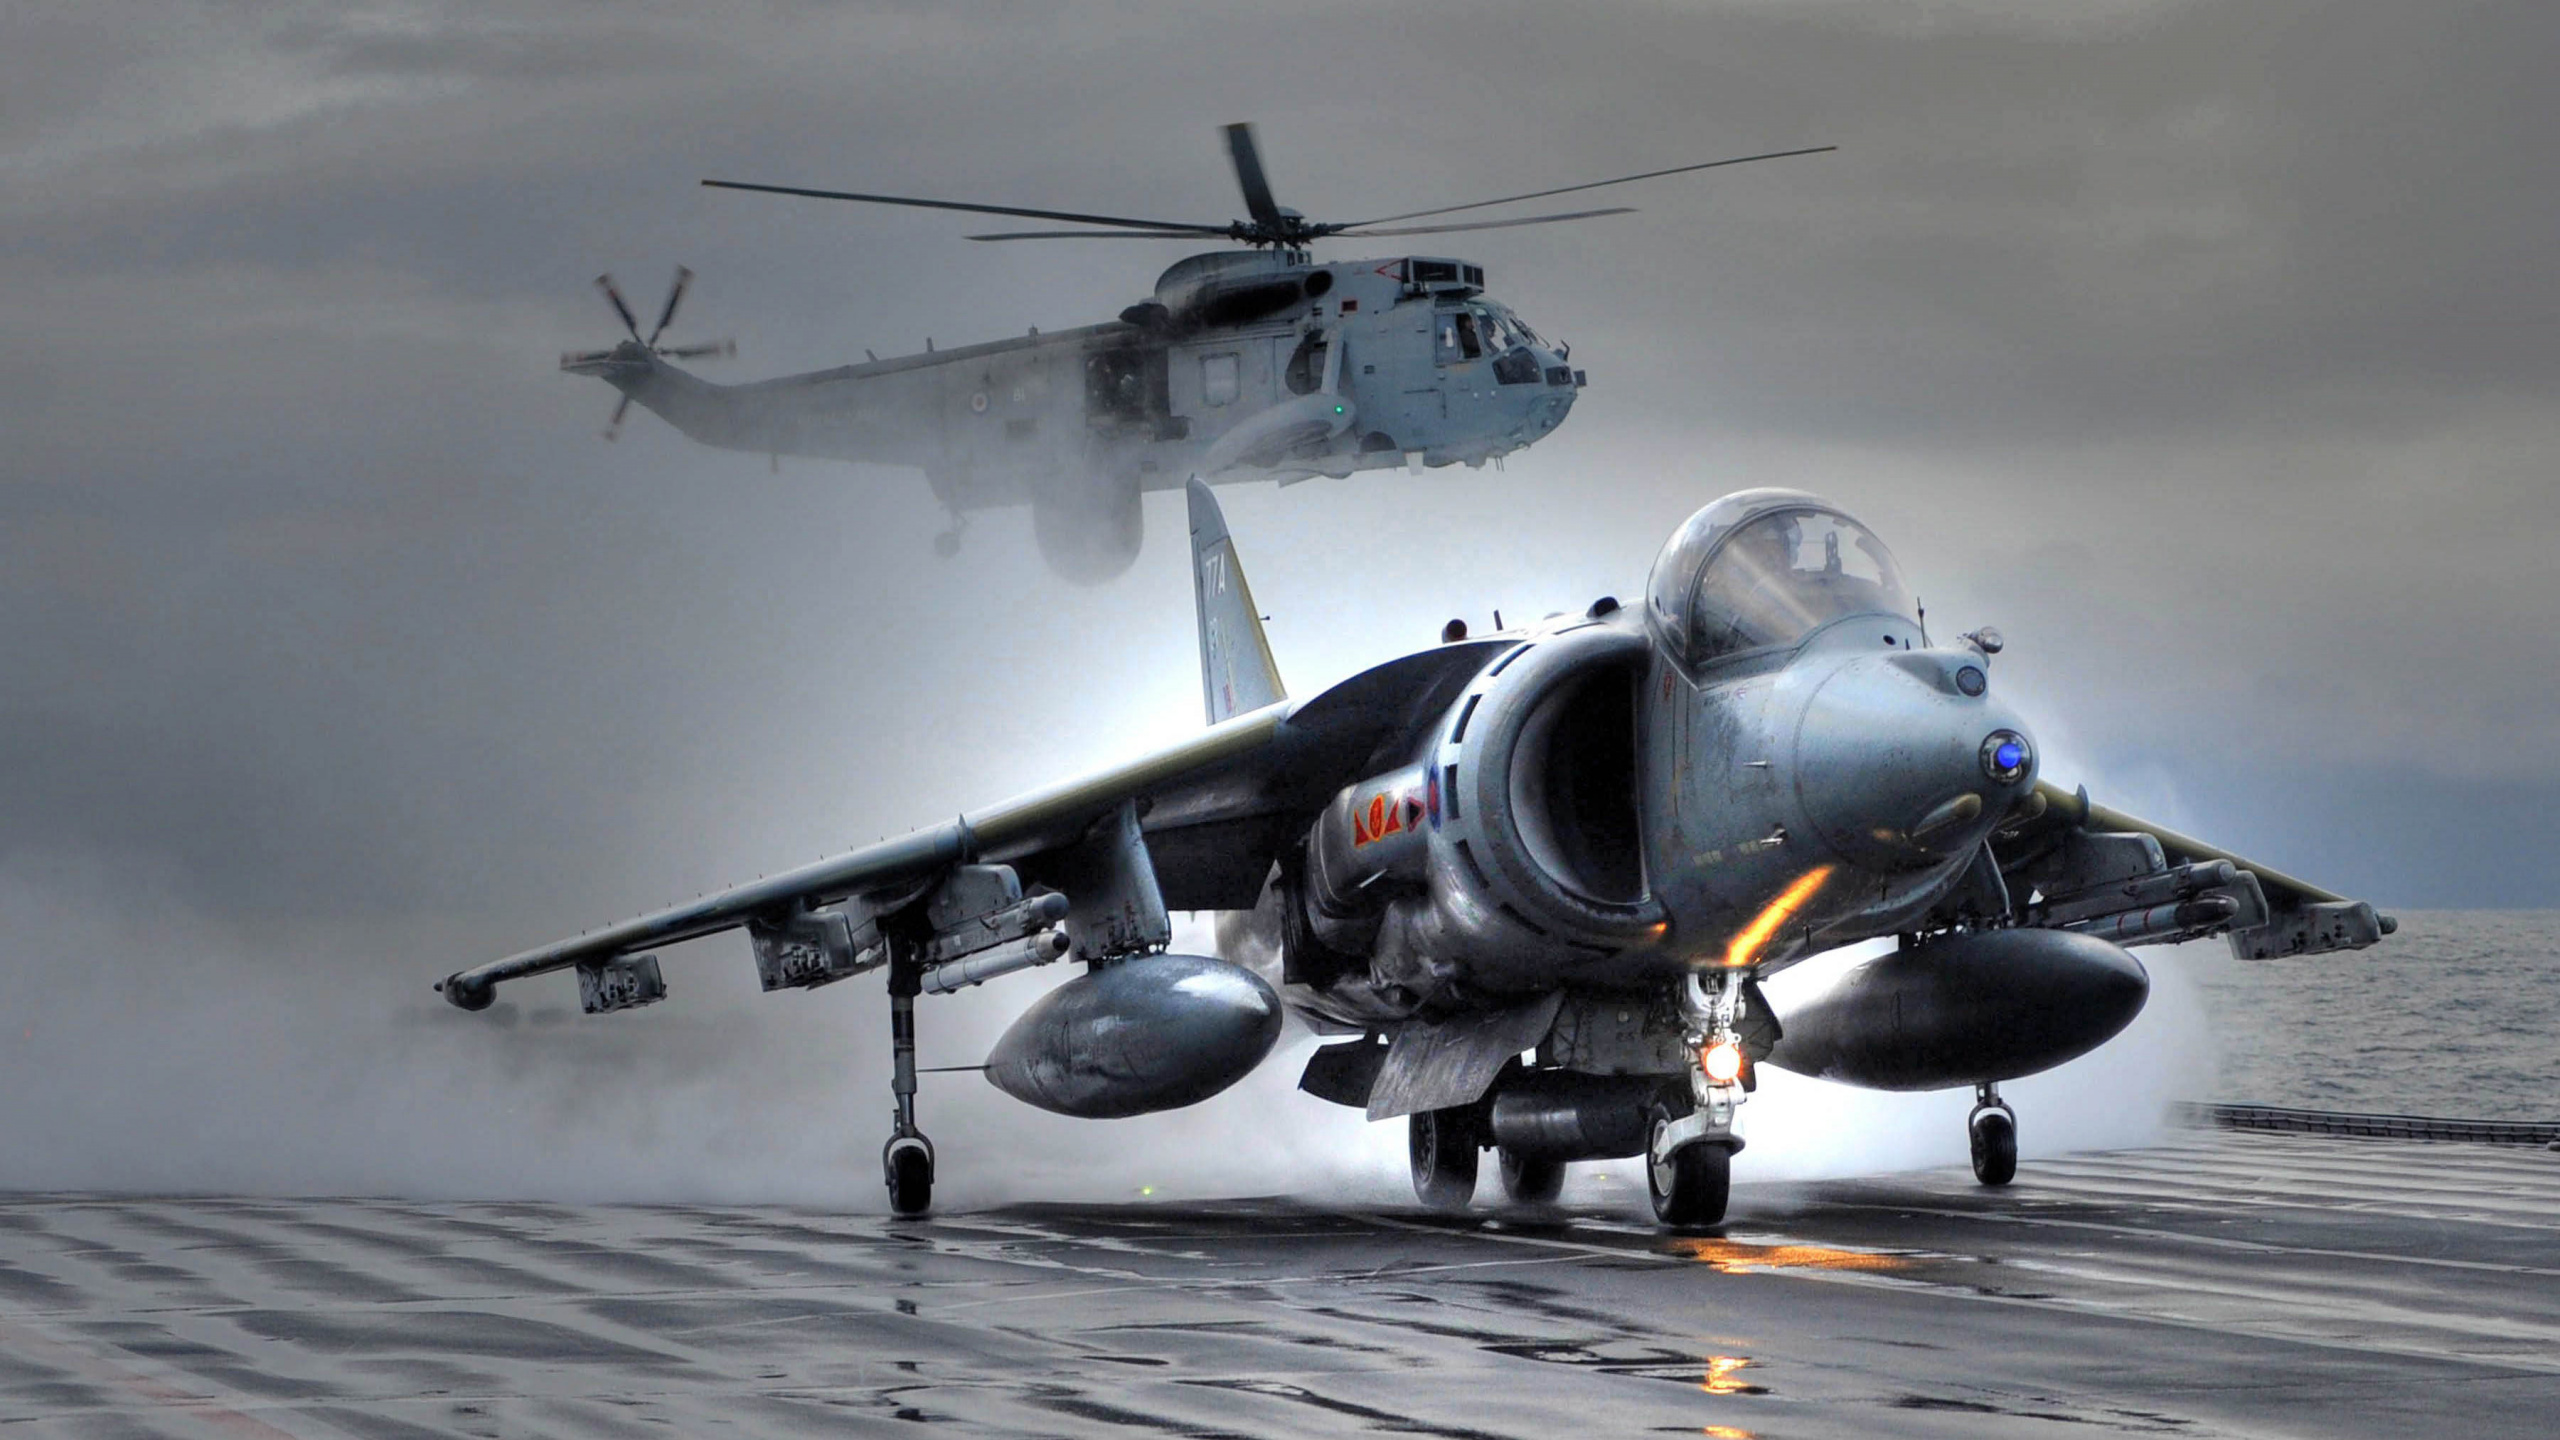 HMS方舟皇家, 麦克道格拉斯AV-8B Harrier II, 英国航空航天鹞II, 霍克*西德利鹞, 英国航空航天海鹞 壁纸 2560x1440 允许